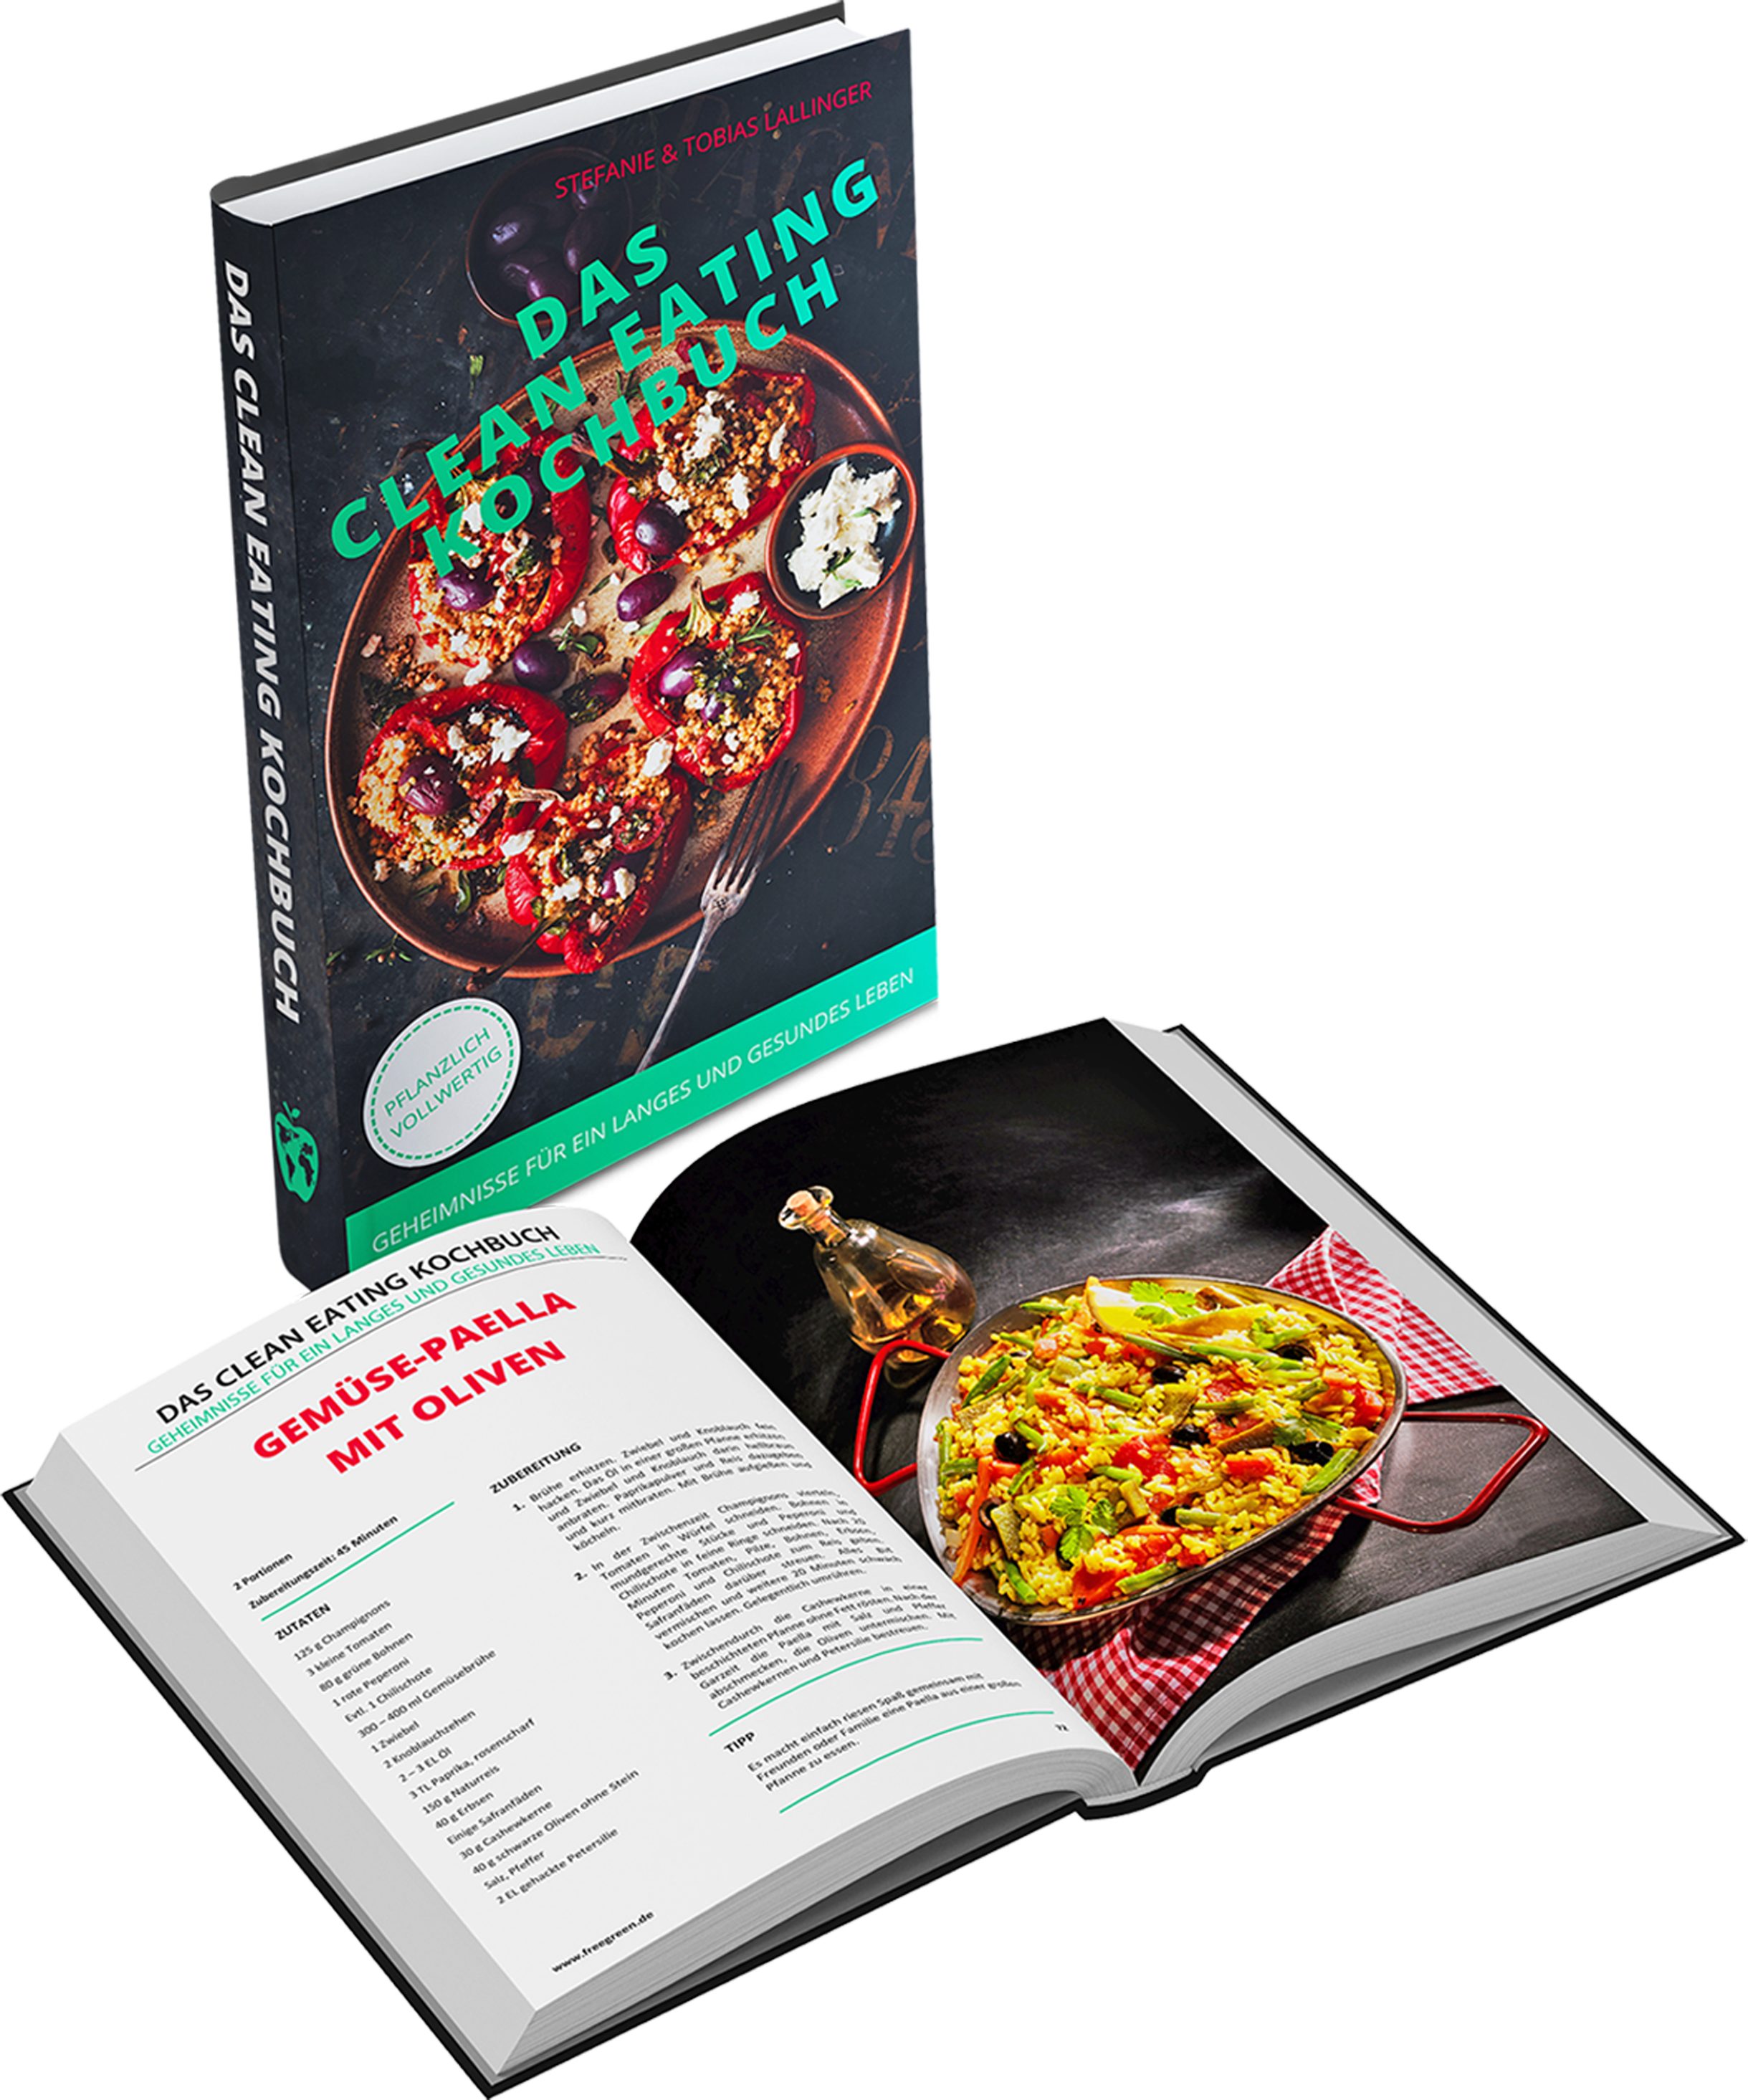 Eating Geheimnisse Das Kochbuch- Leben, ohne und & gesundes Clean Notizbuch Verzicht ein langes für glücklich freegreen® Gesund